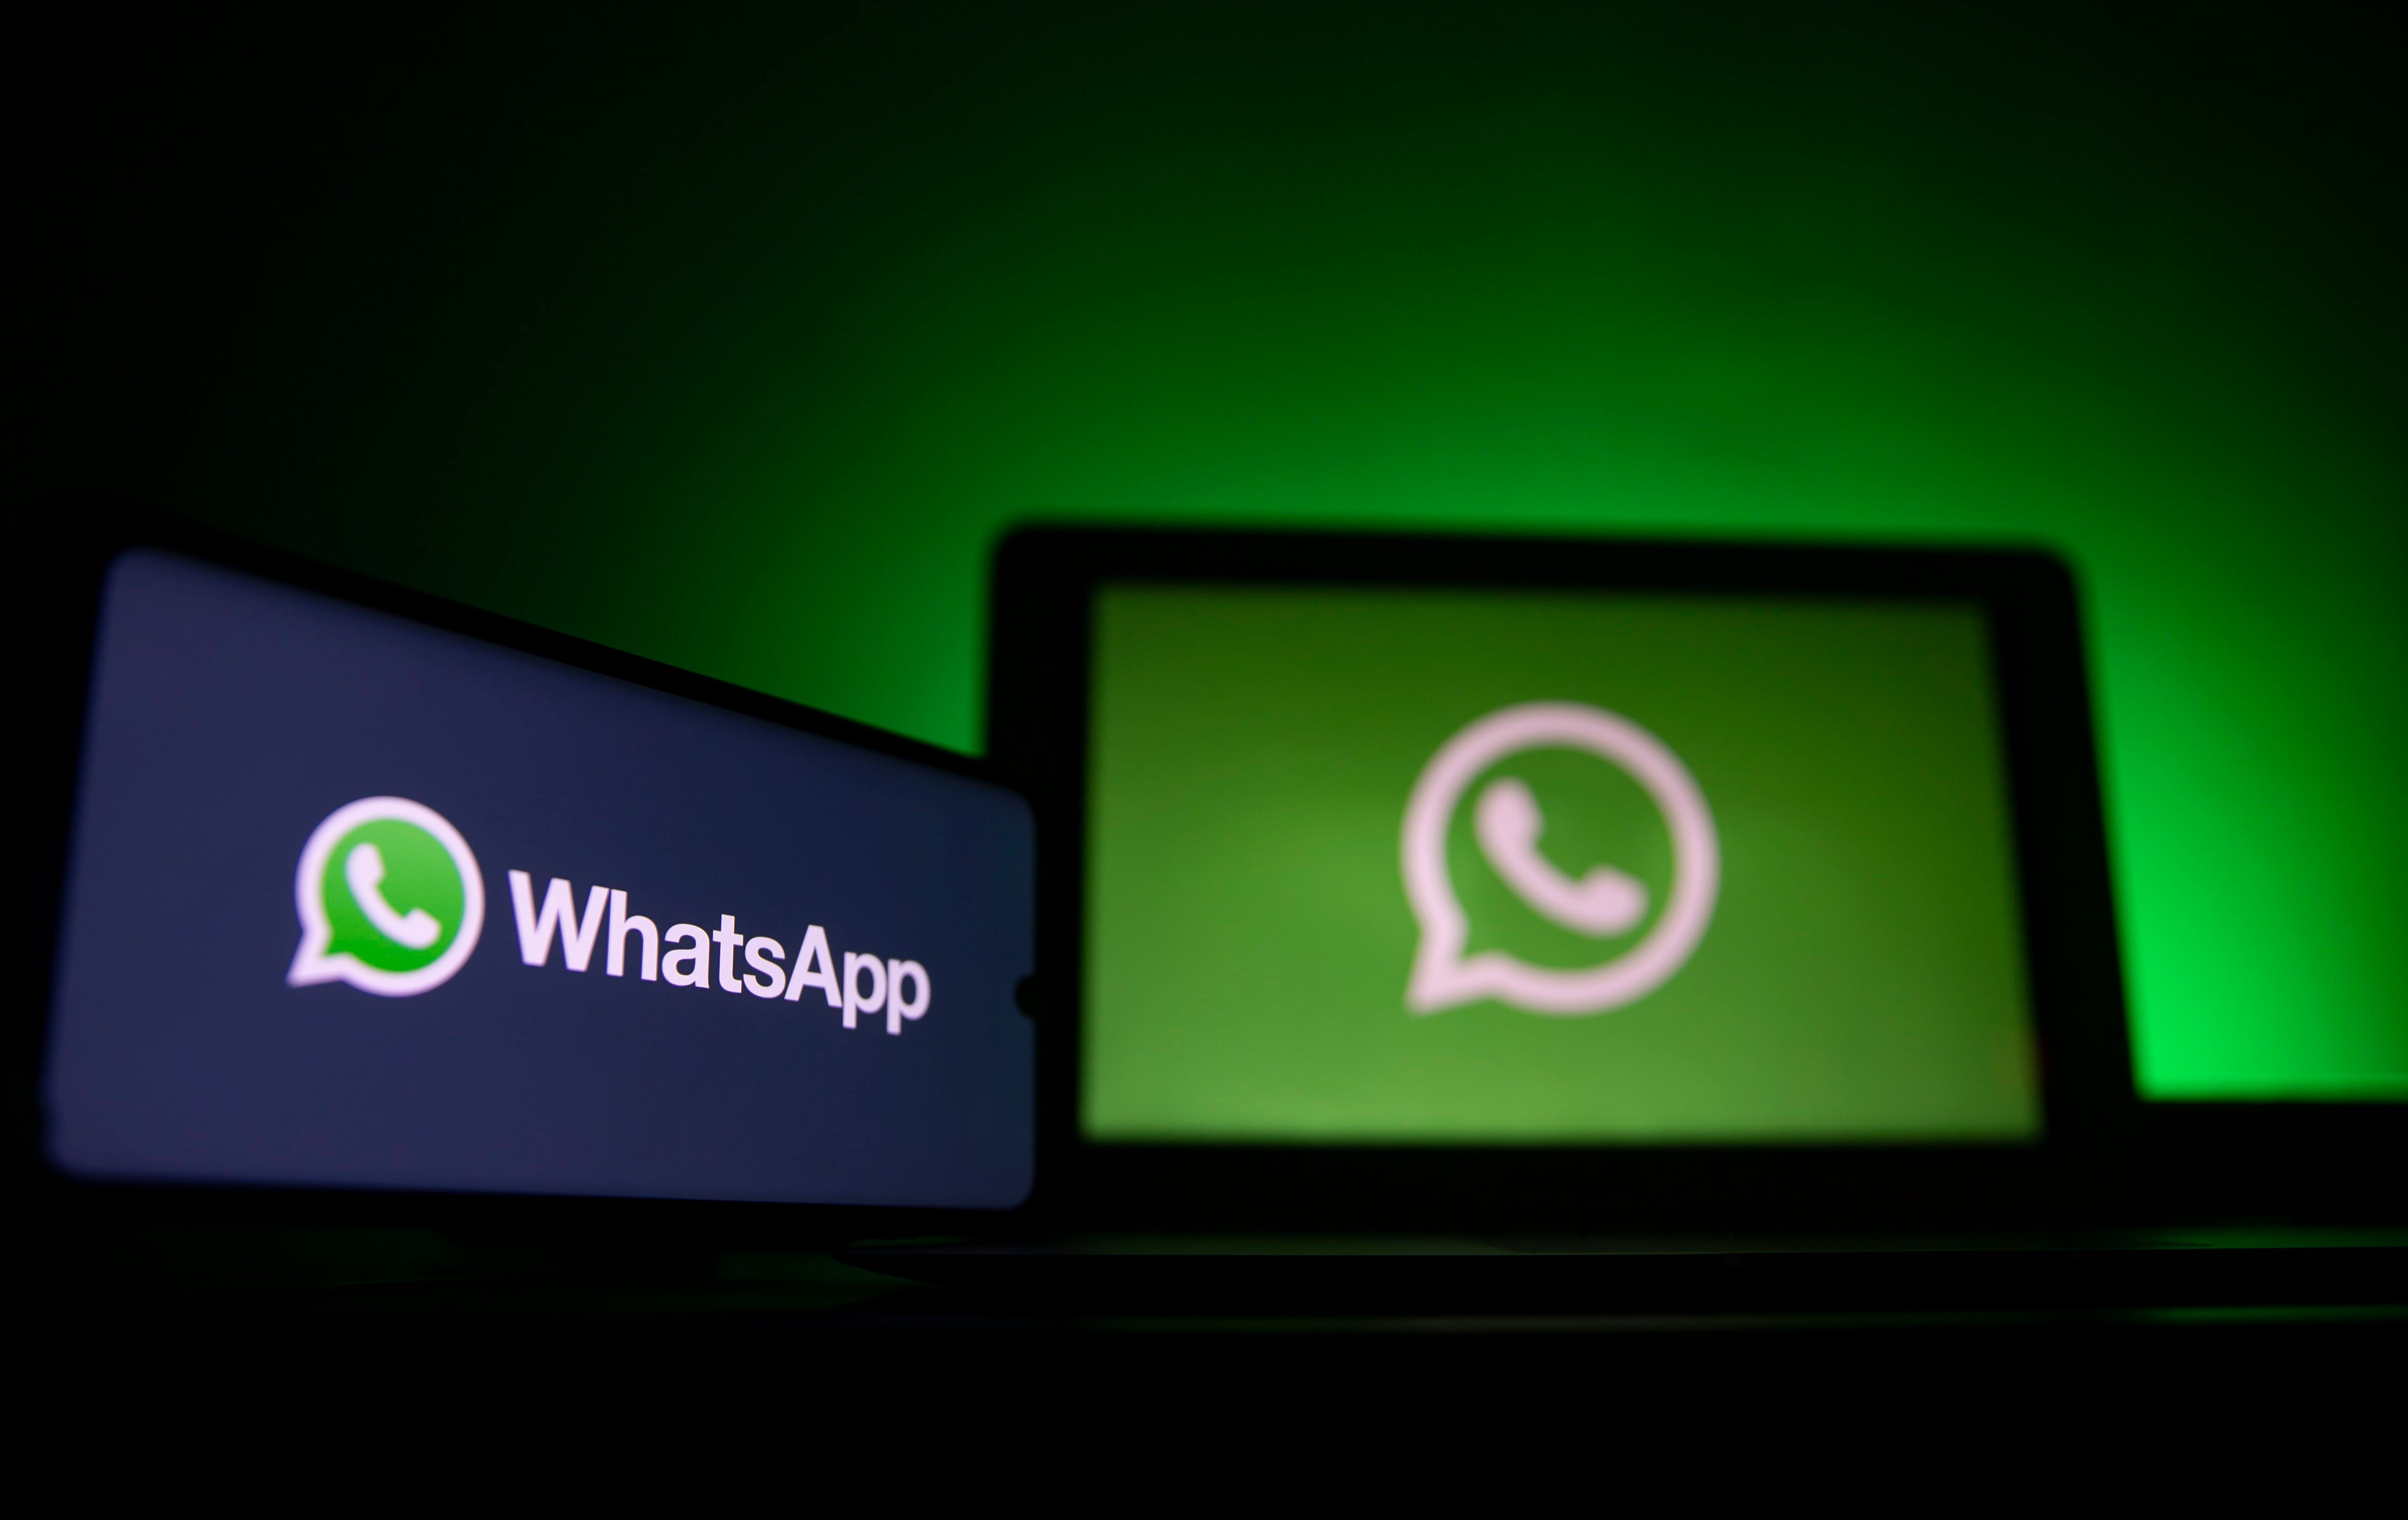 WhatsApp sigue trabajando en actualizaciones para mejorar la experiencia de sus usuarios. (Foto: EFE)